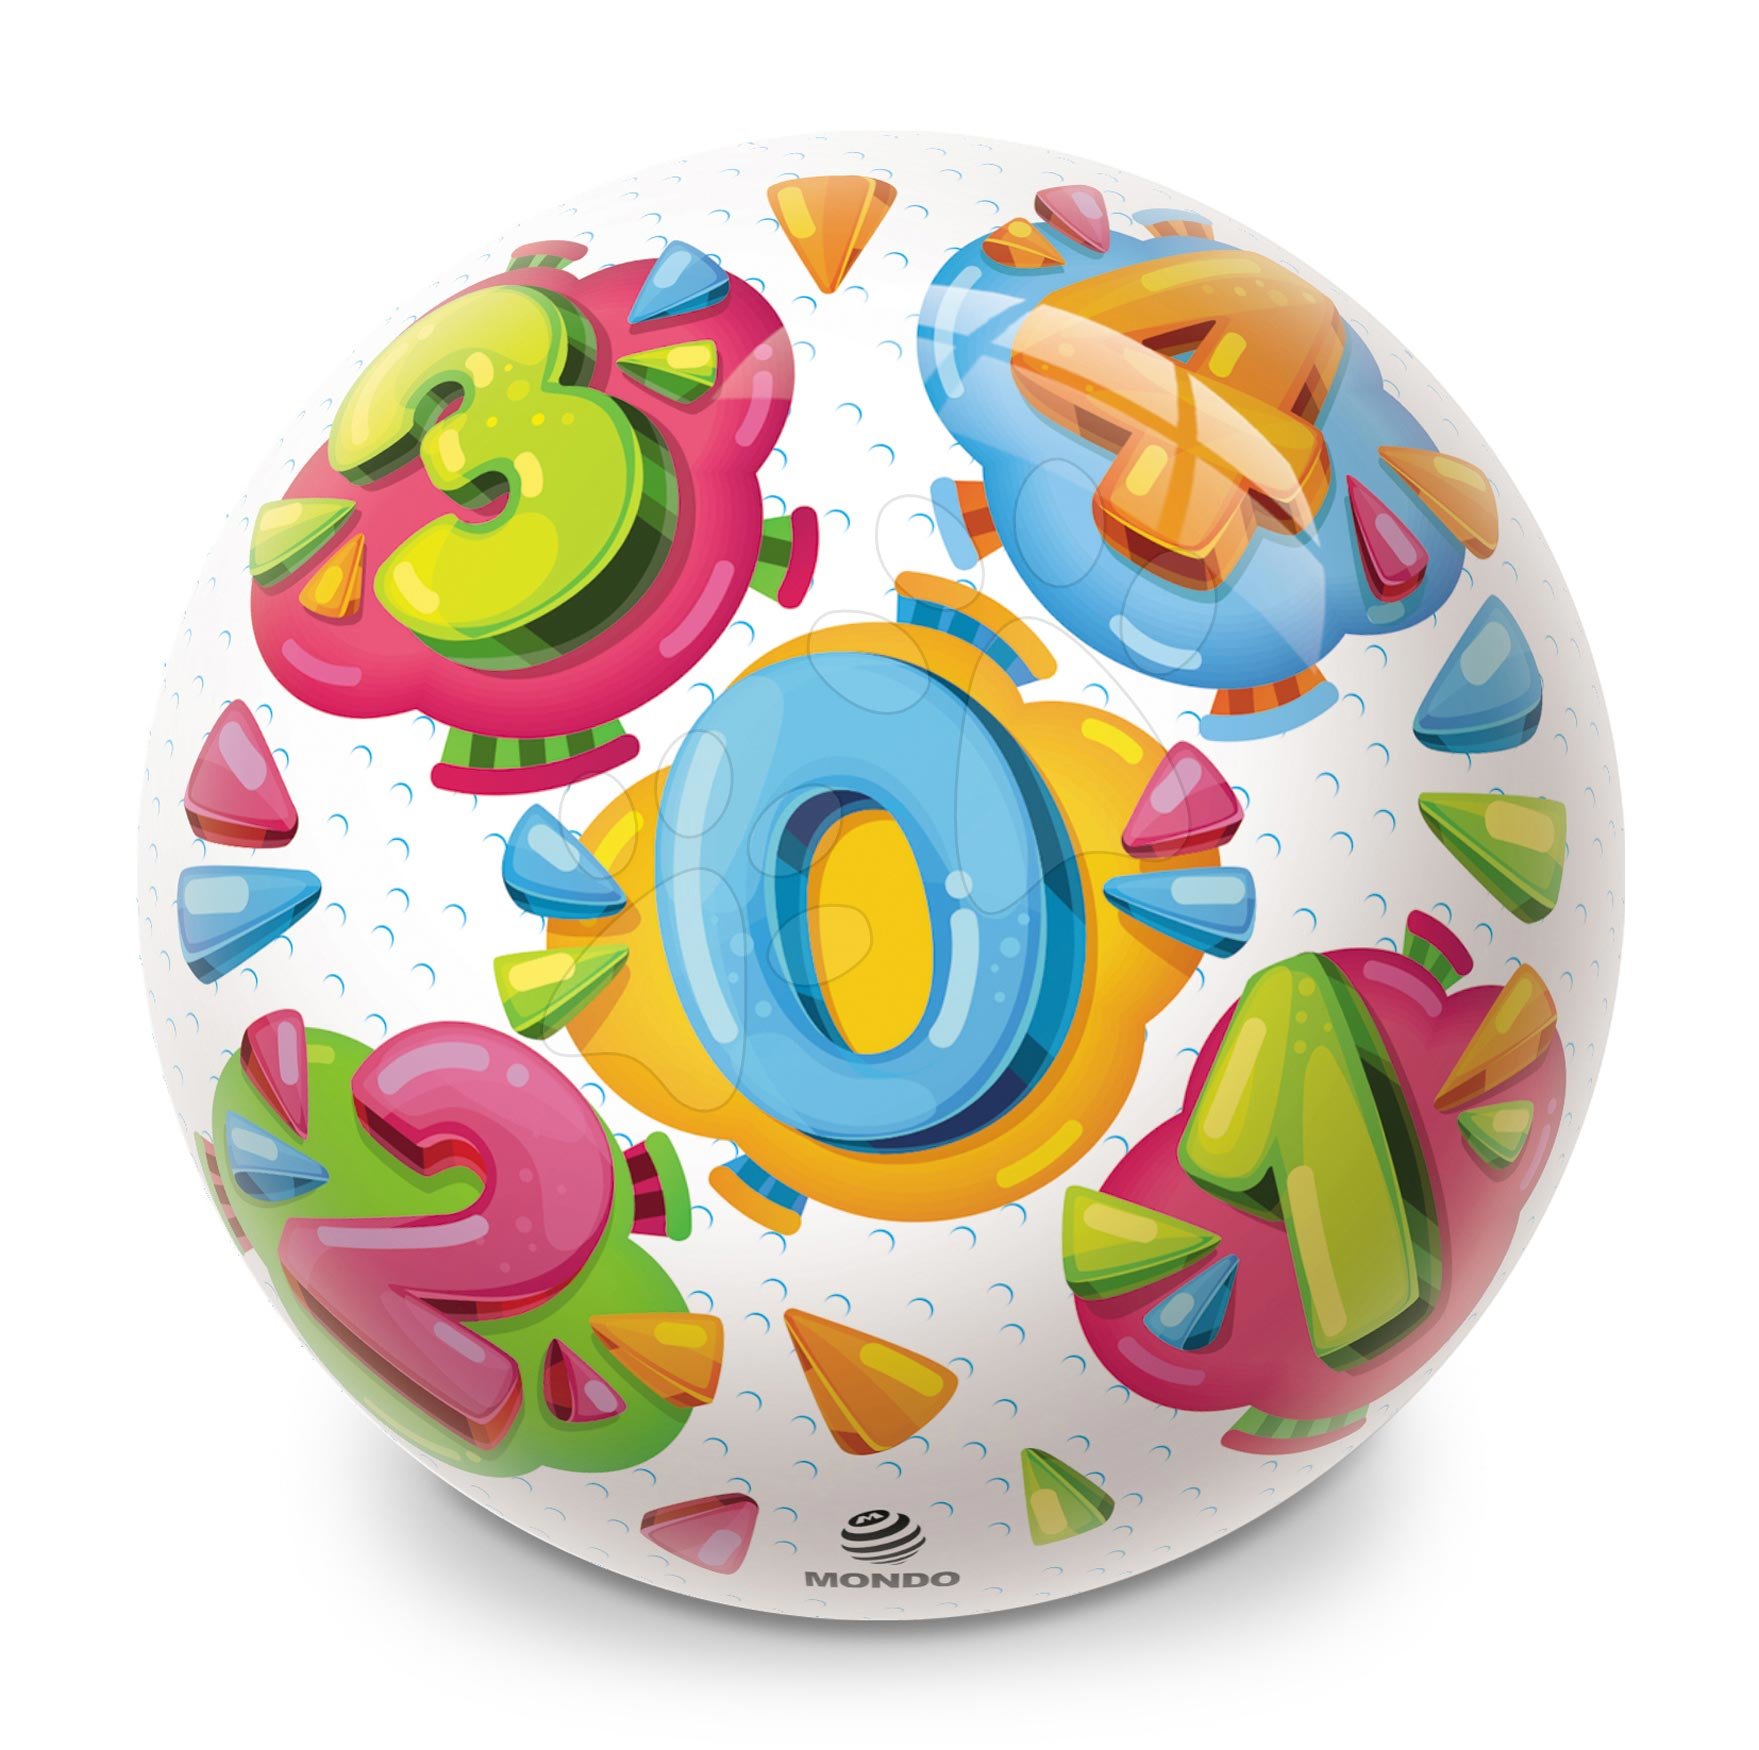 Pohádkové míče - Obrázkový míč BioBall Čísla Mondo gumový 23 cm